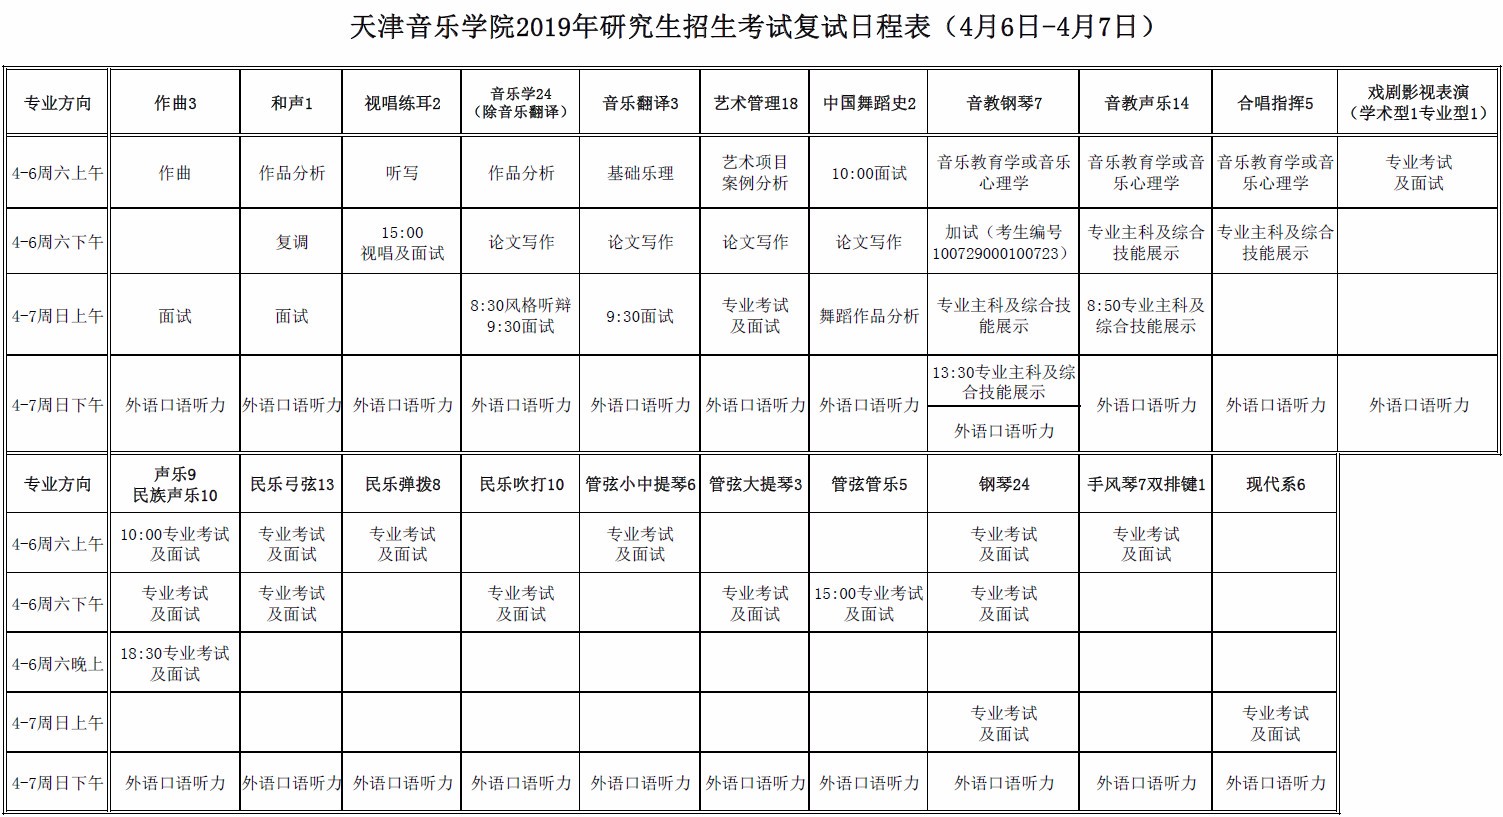 2019年天津音乐学院研究生招生考试复试安排